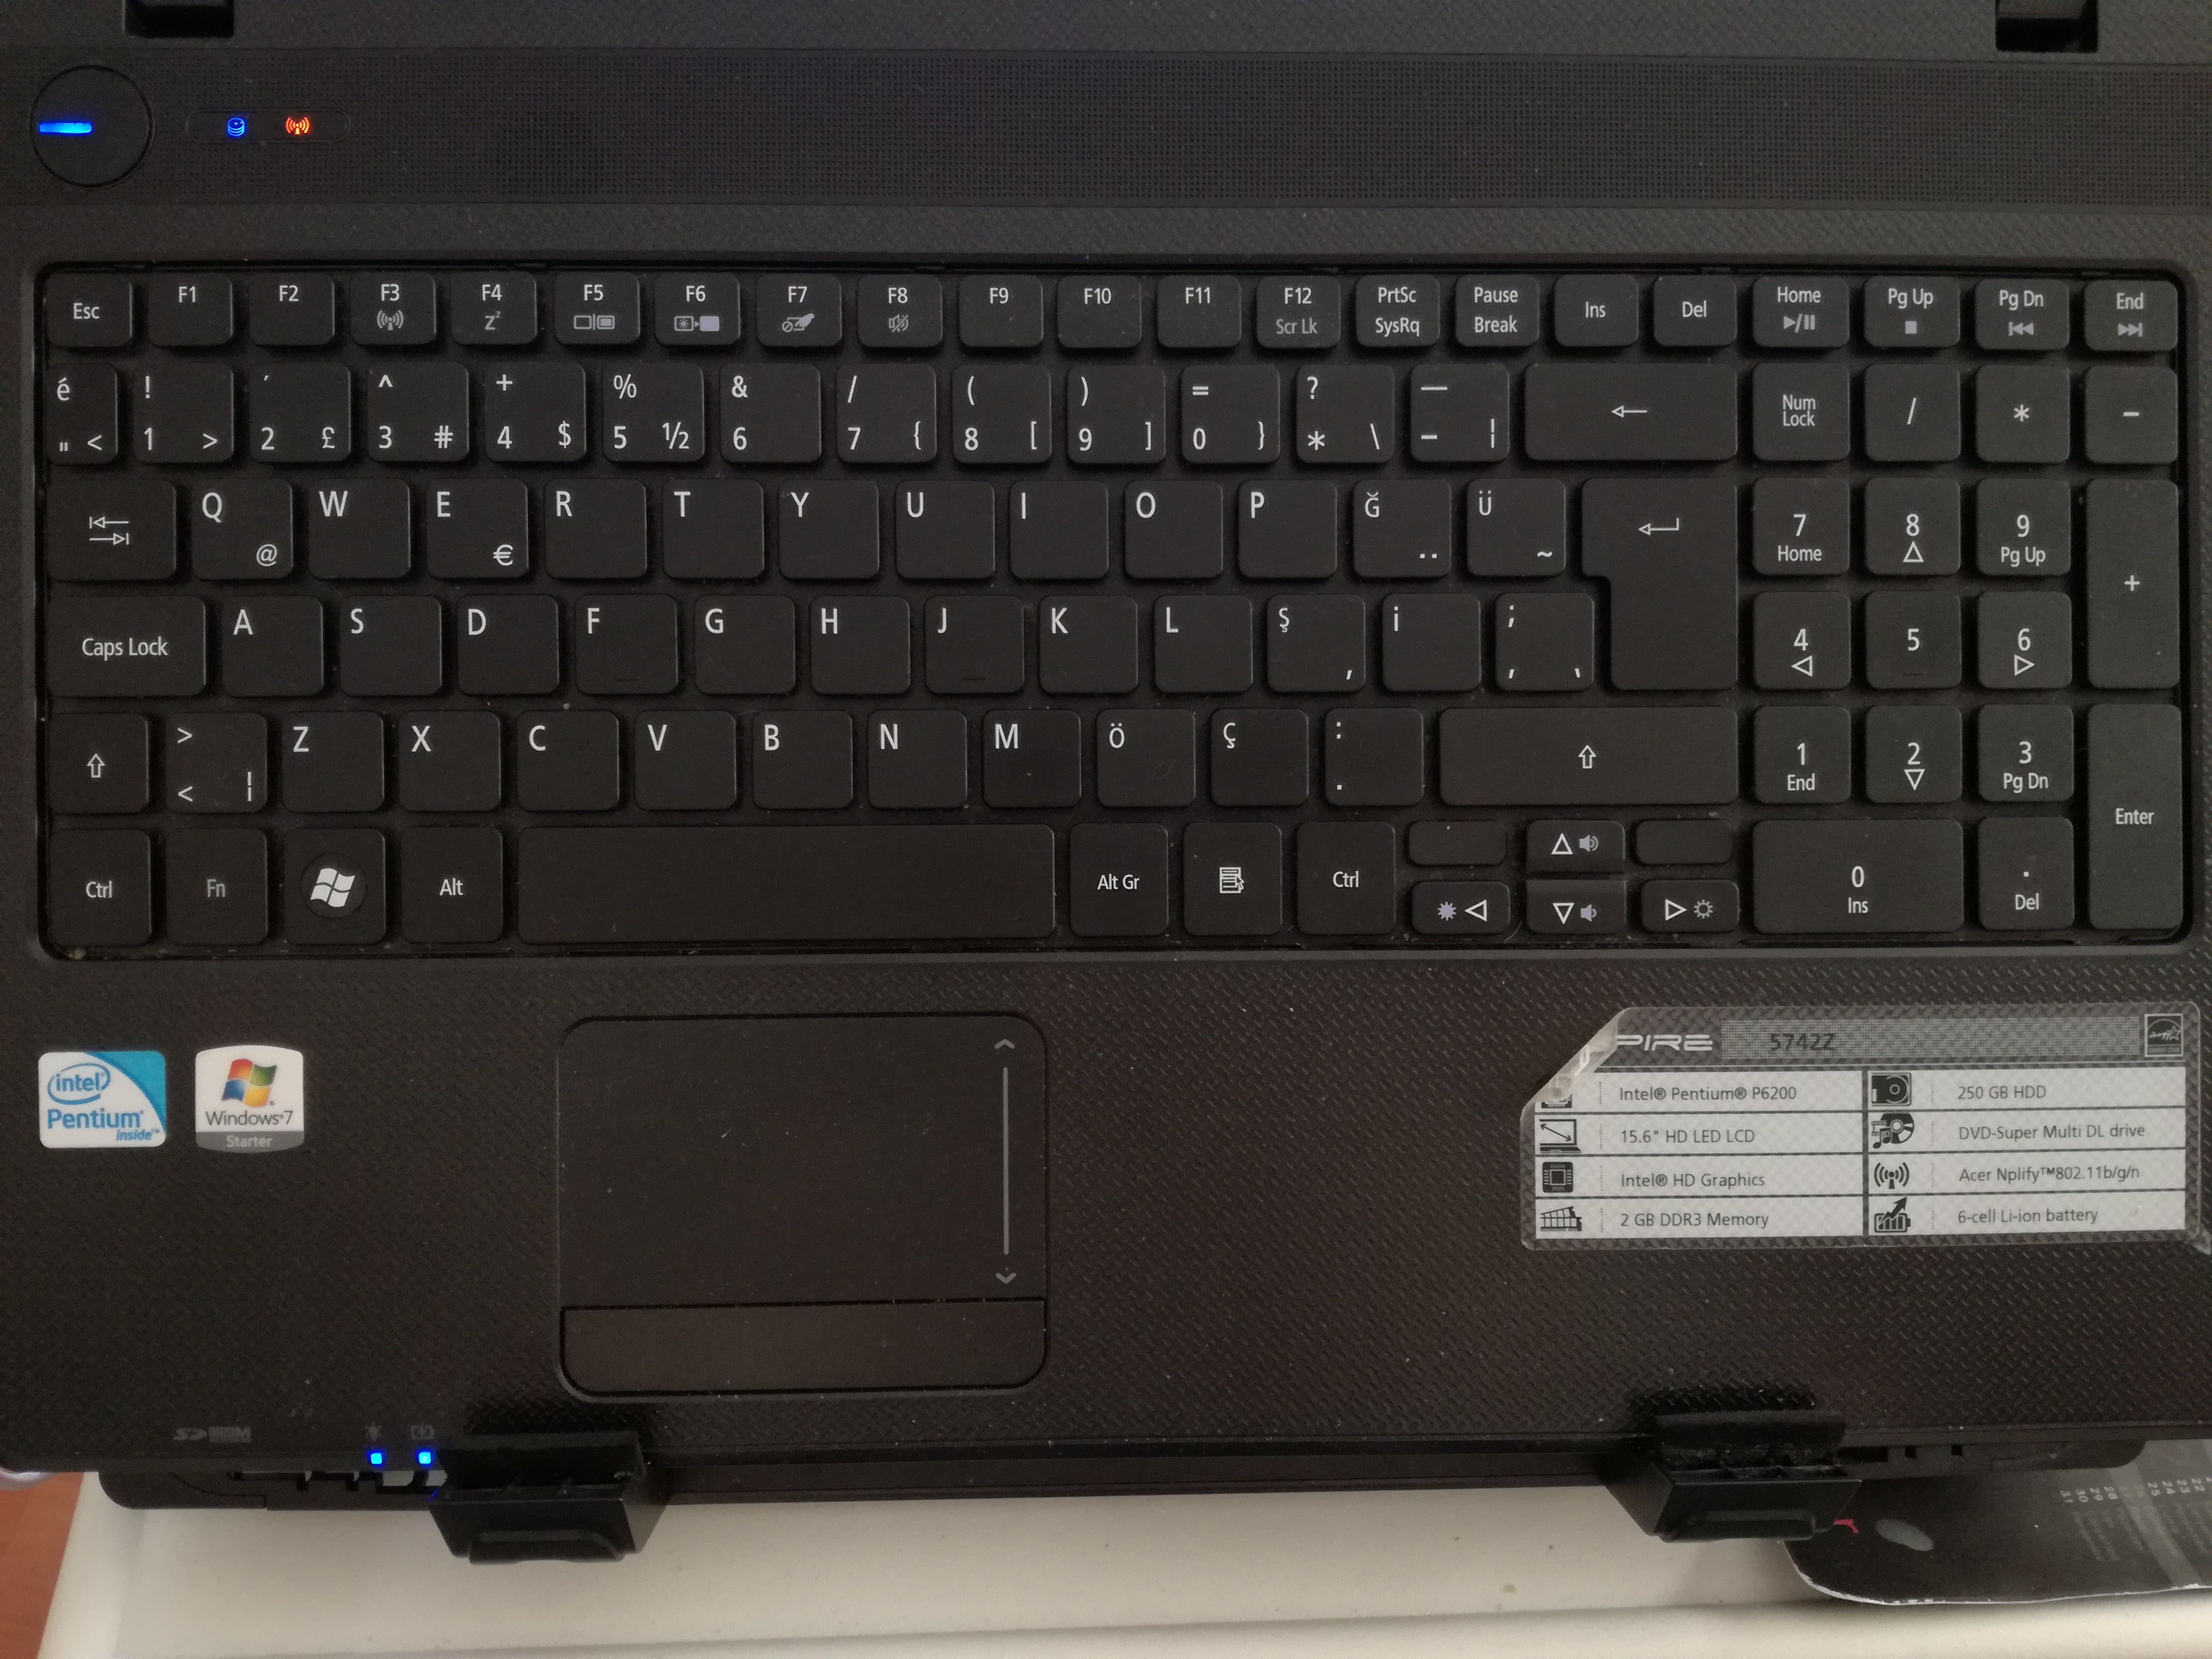 Acer Aspire 5742Z ikinci el laptop fiyatı kaç olur? | Technopat Sosyal